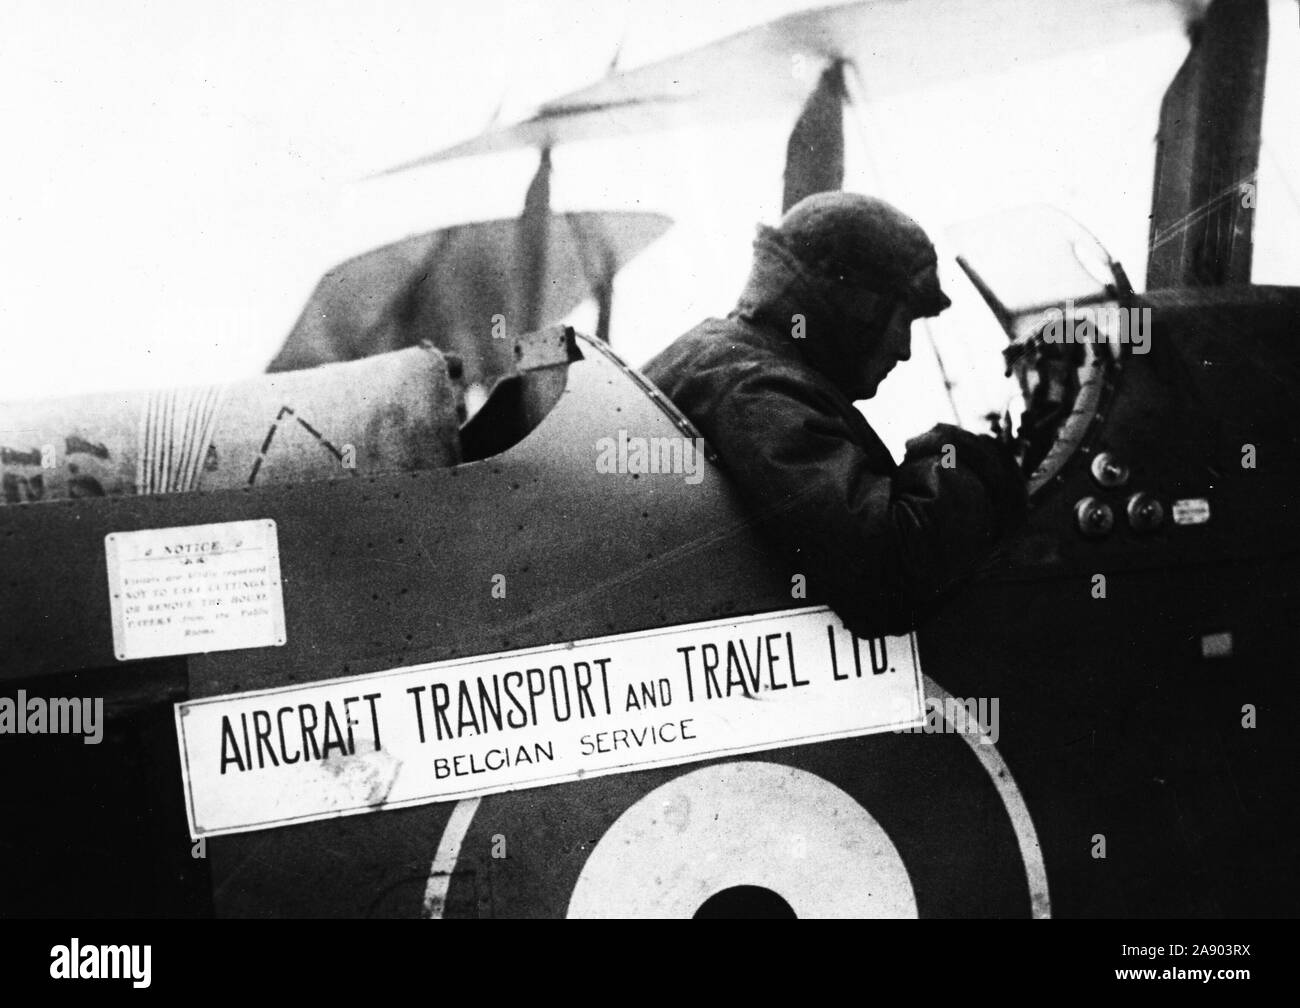 1919 - Frieden verwendet für den Krieg Flugzeuge. Verwenden Sie für Tausende von Flugzeugen, Leerlauf, nachdem die Feindseligkeiten eingestellt hatte, teilweise in England durch den Einsatz von Maschinen und Piloten für den Transport von Waren und Lebensmittel gelöst. Stockfoto